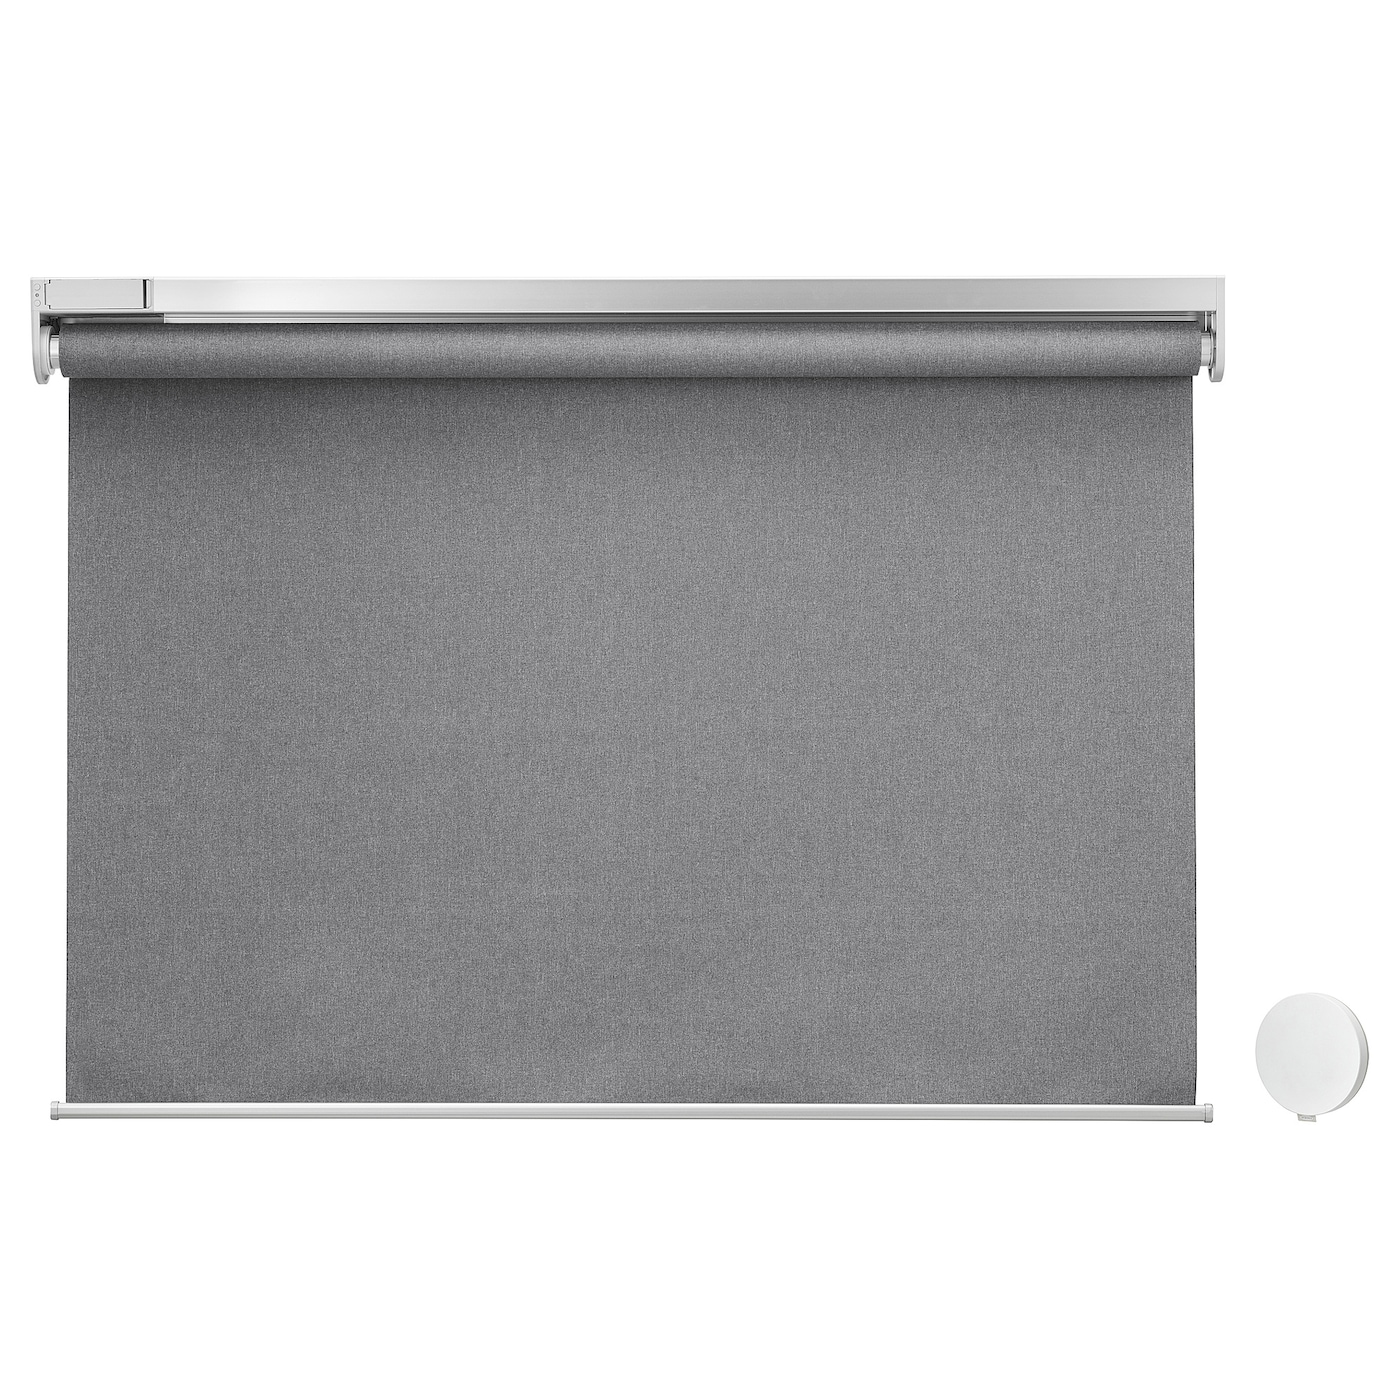 Рулонная штора с пультом управления (blackout) - IKEA FYRTUR, 195х100 см, серый, ФЮРТЮР ИКЕА